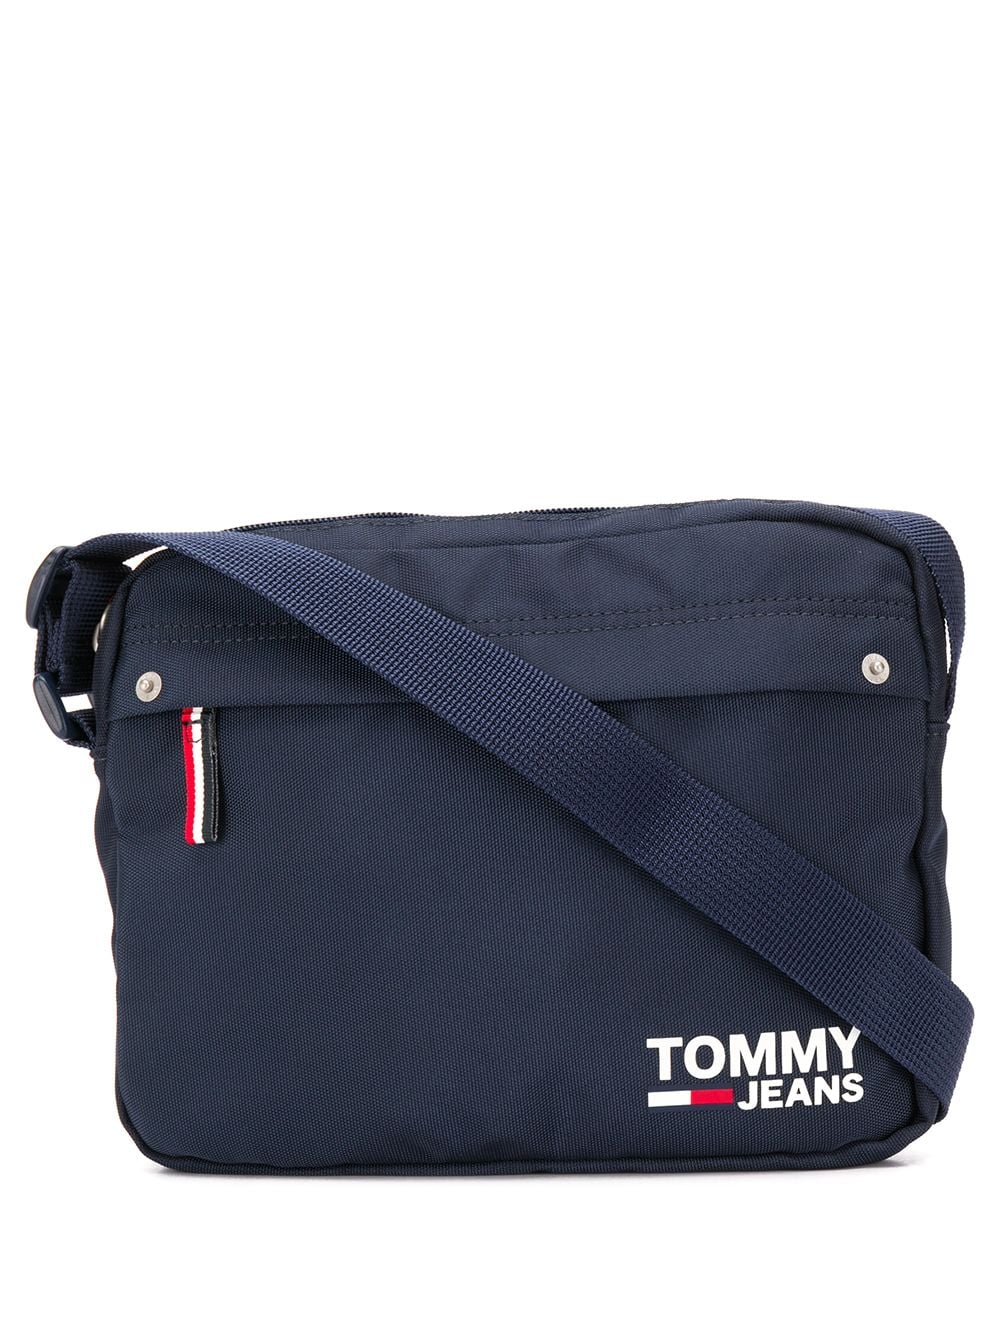 фото Tommy jeans сумка через плечо cool city